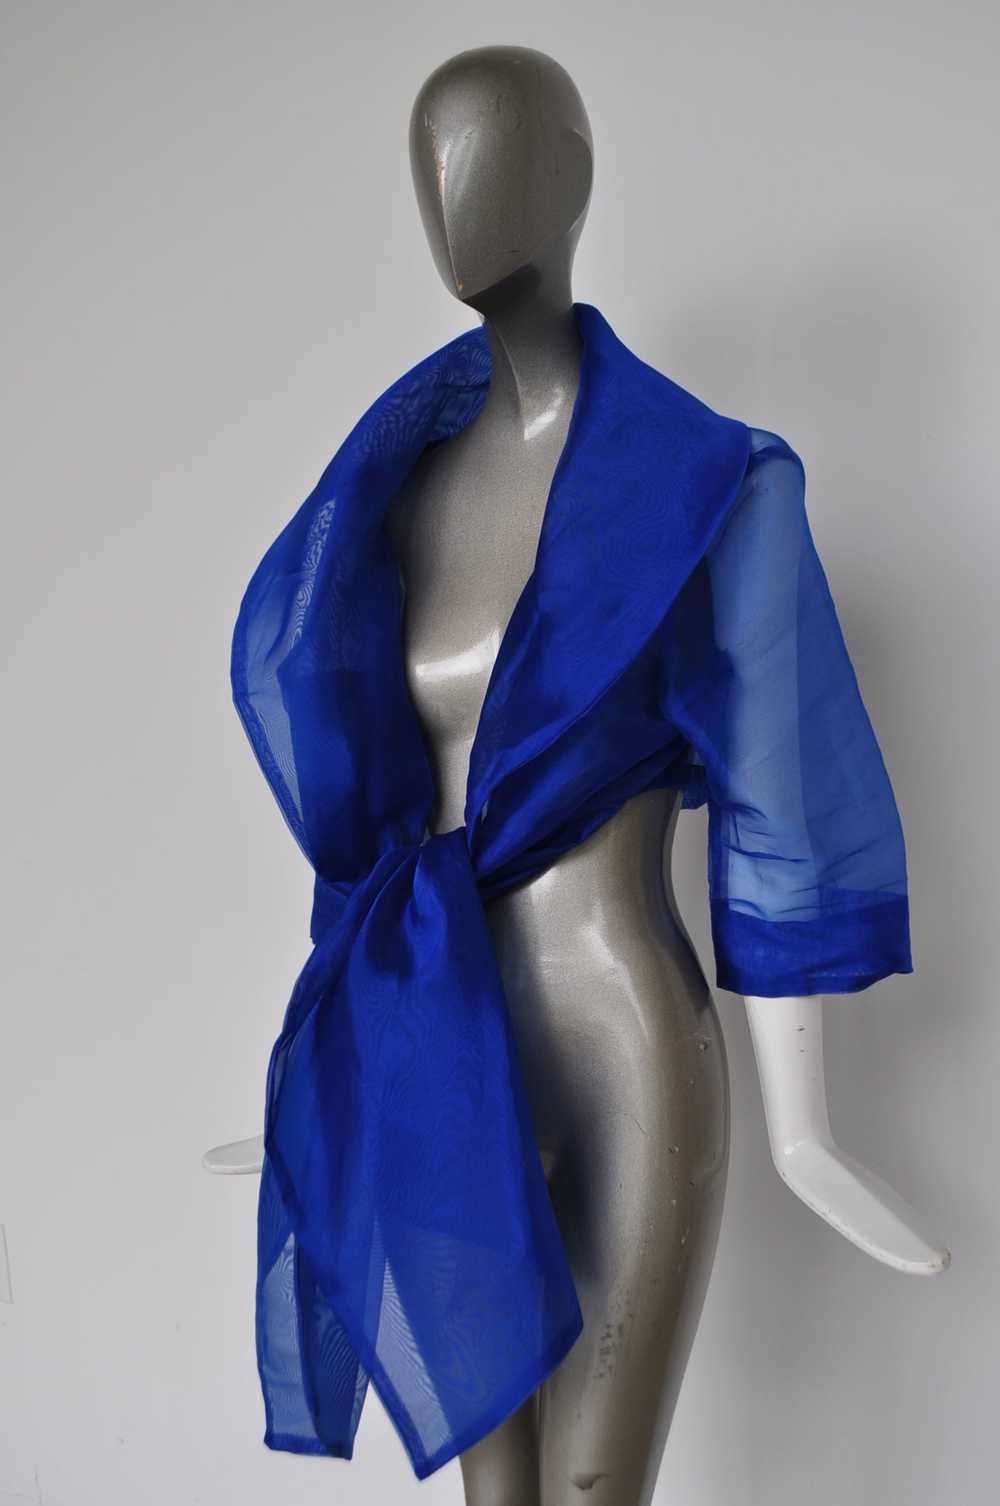 Avantgarde Gauze blouse vibrant blue color - image 1